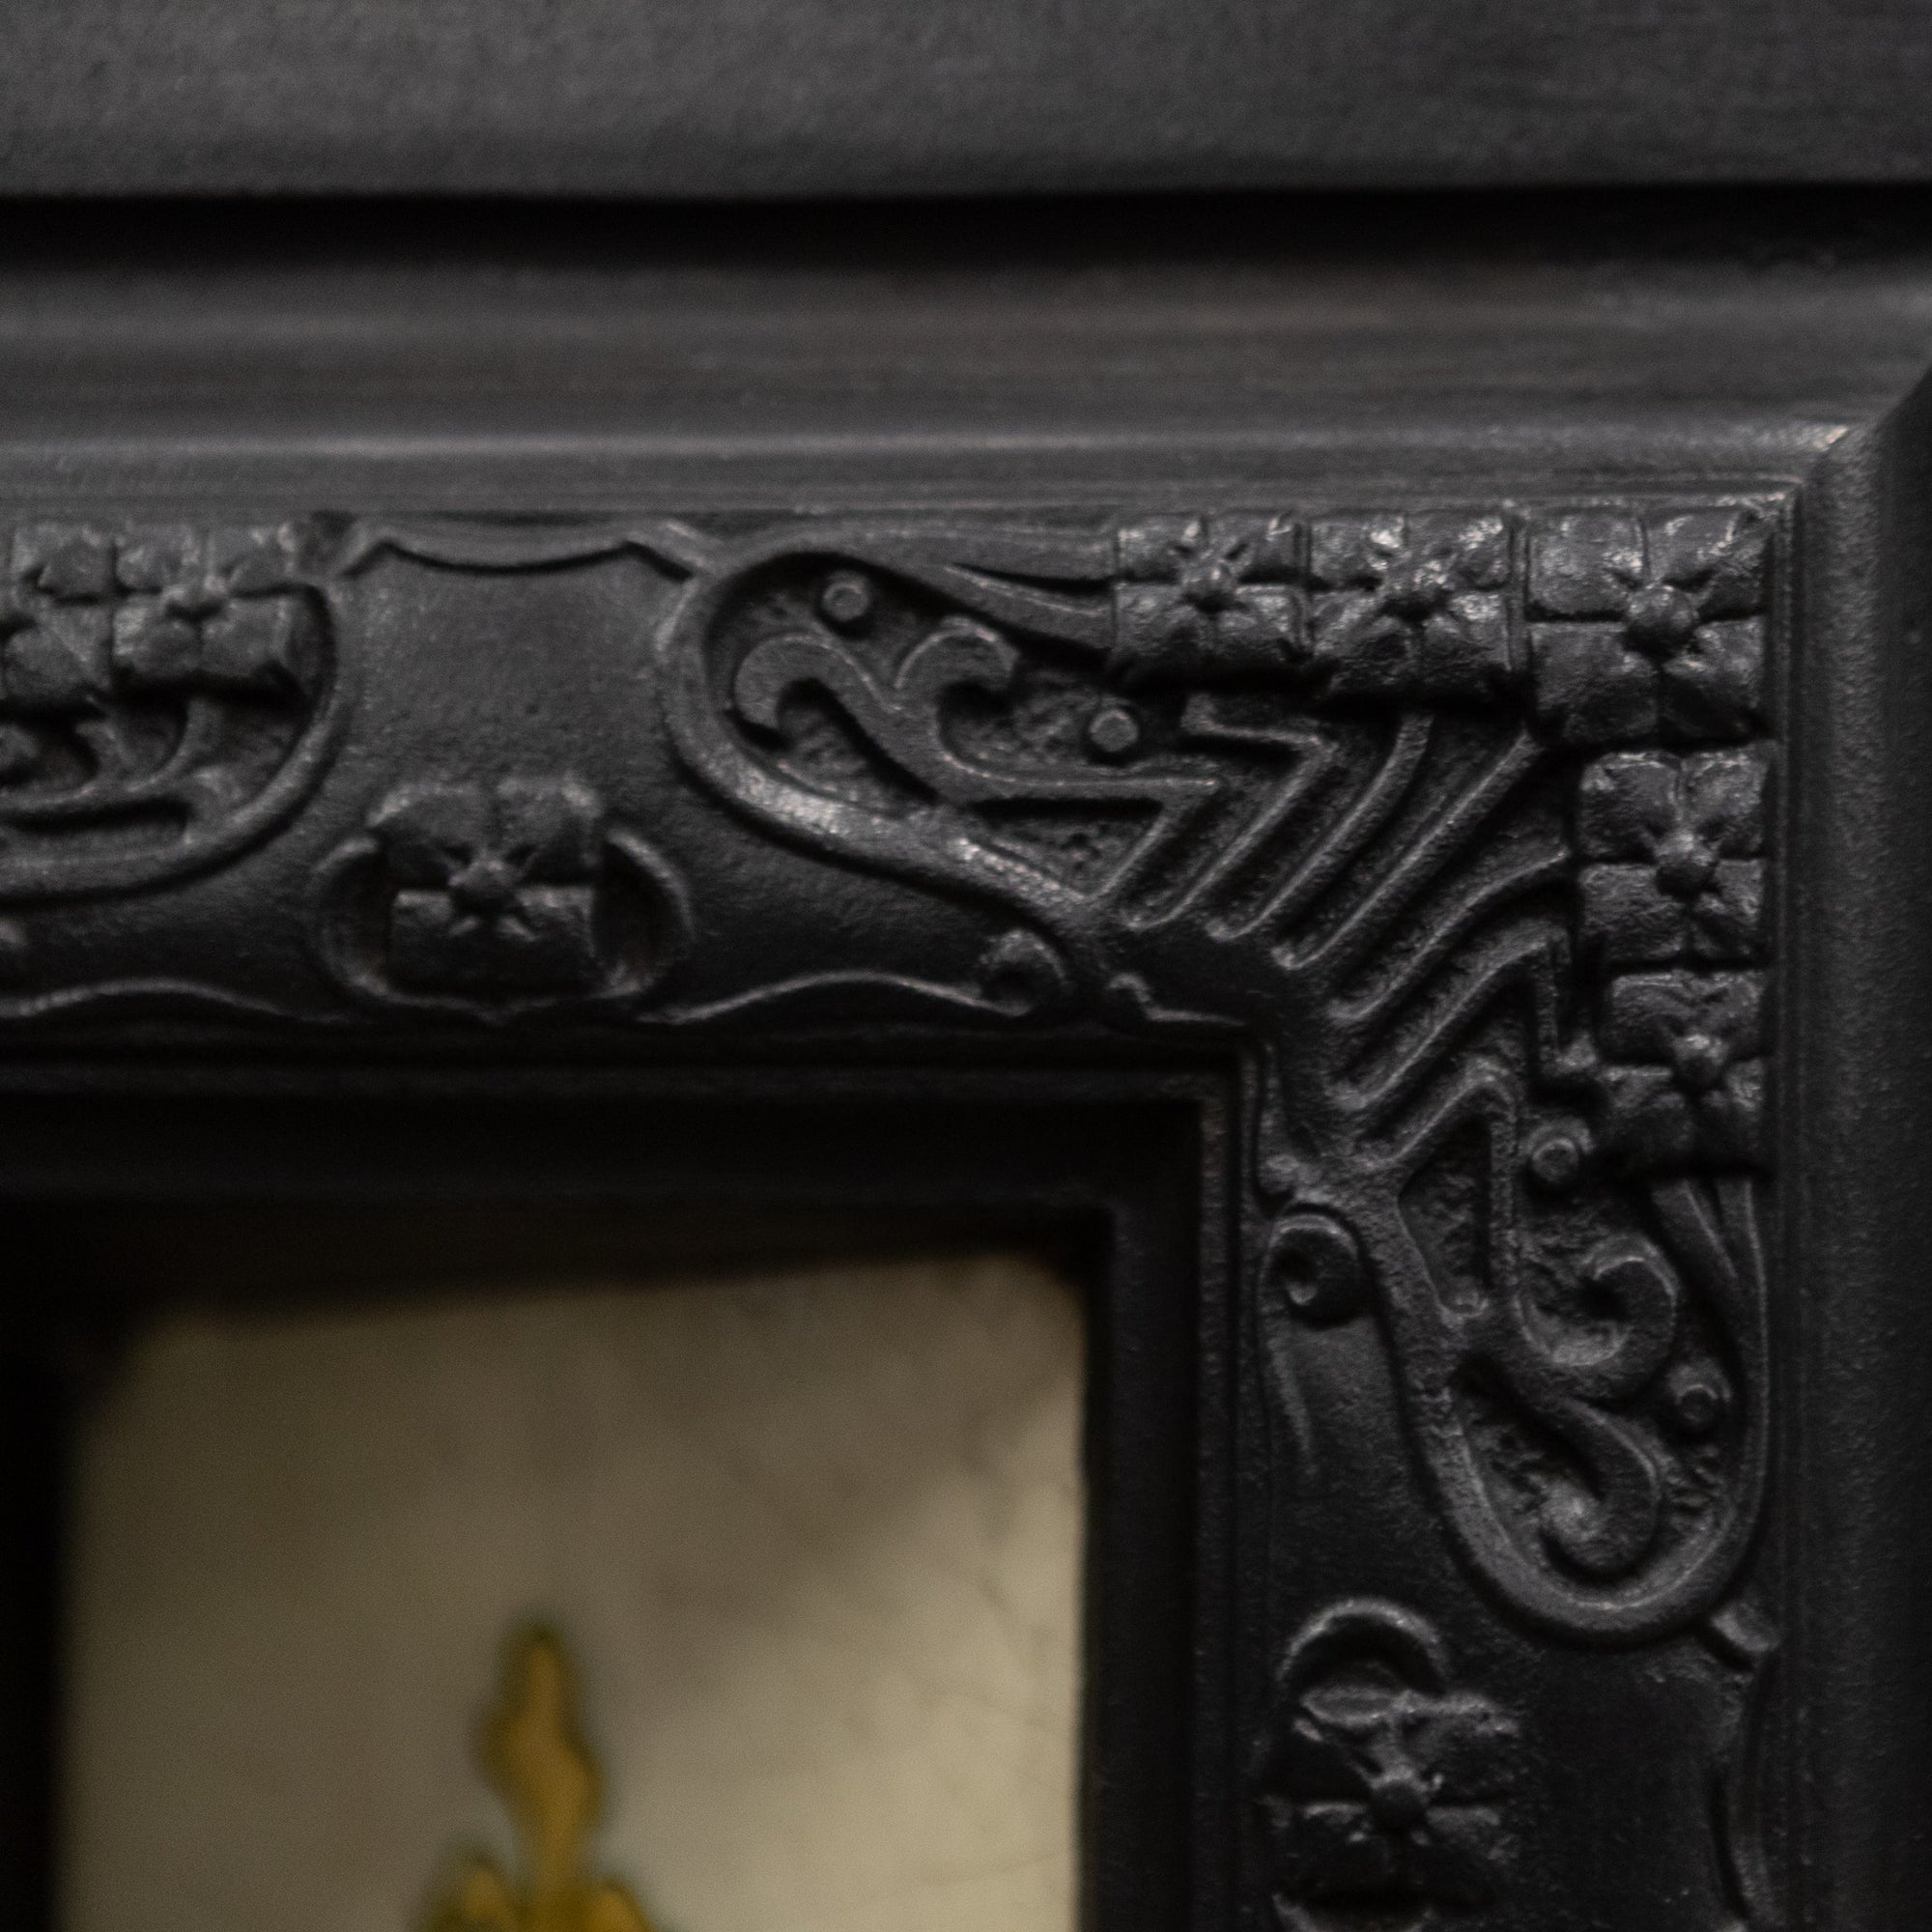 Antique Edwardian Art Nouveau Cast Iron Fireplace Insert with Tiles | The Architectural Forum